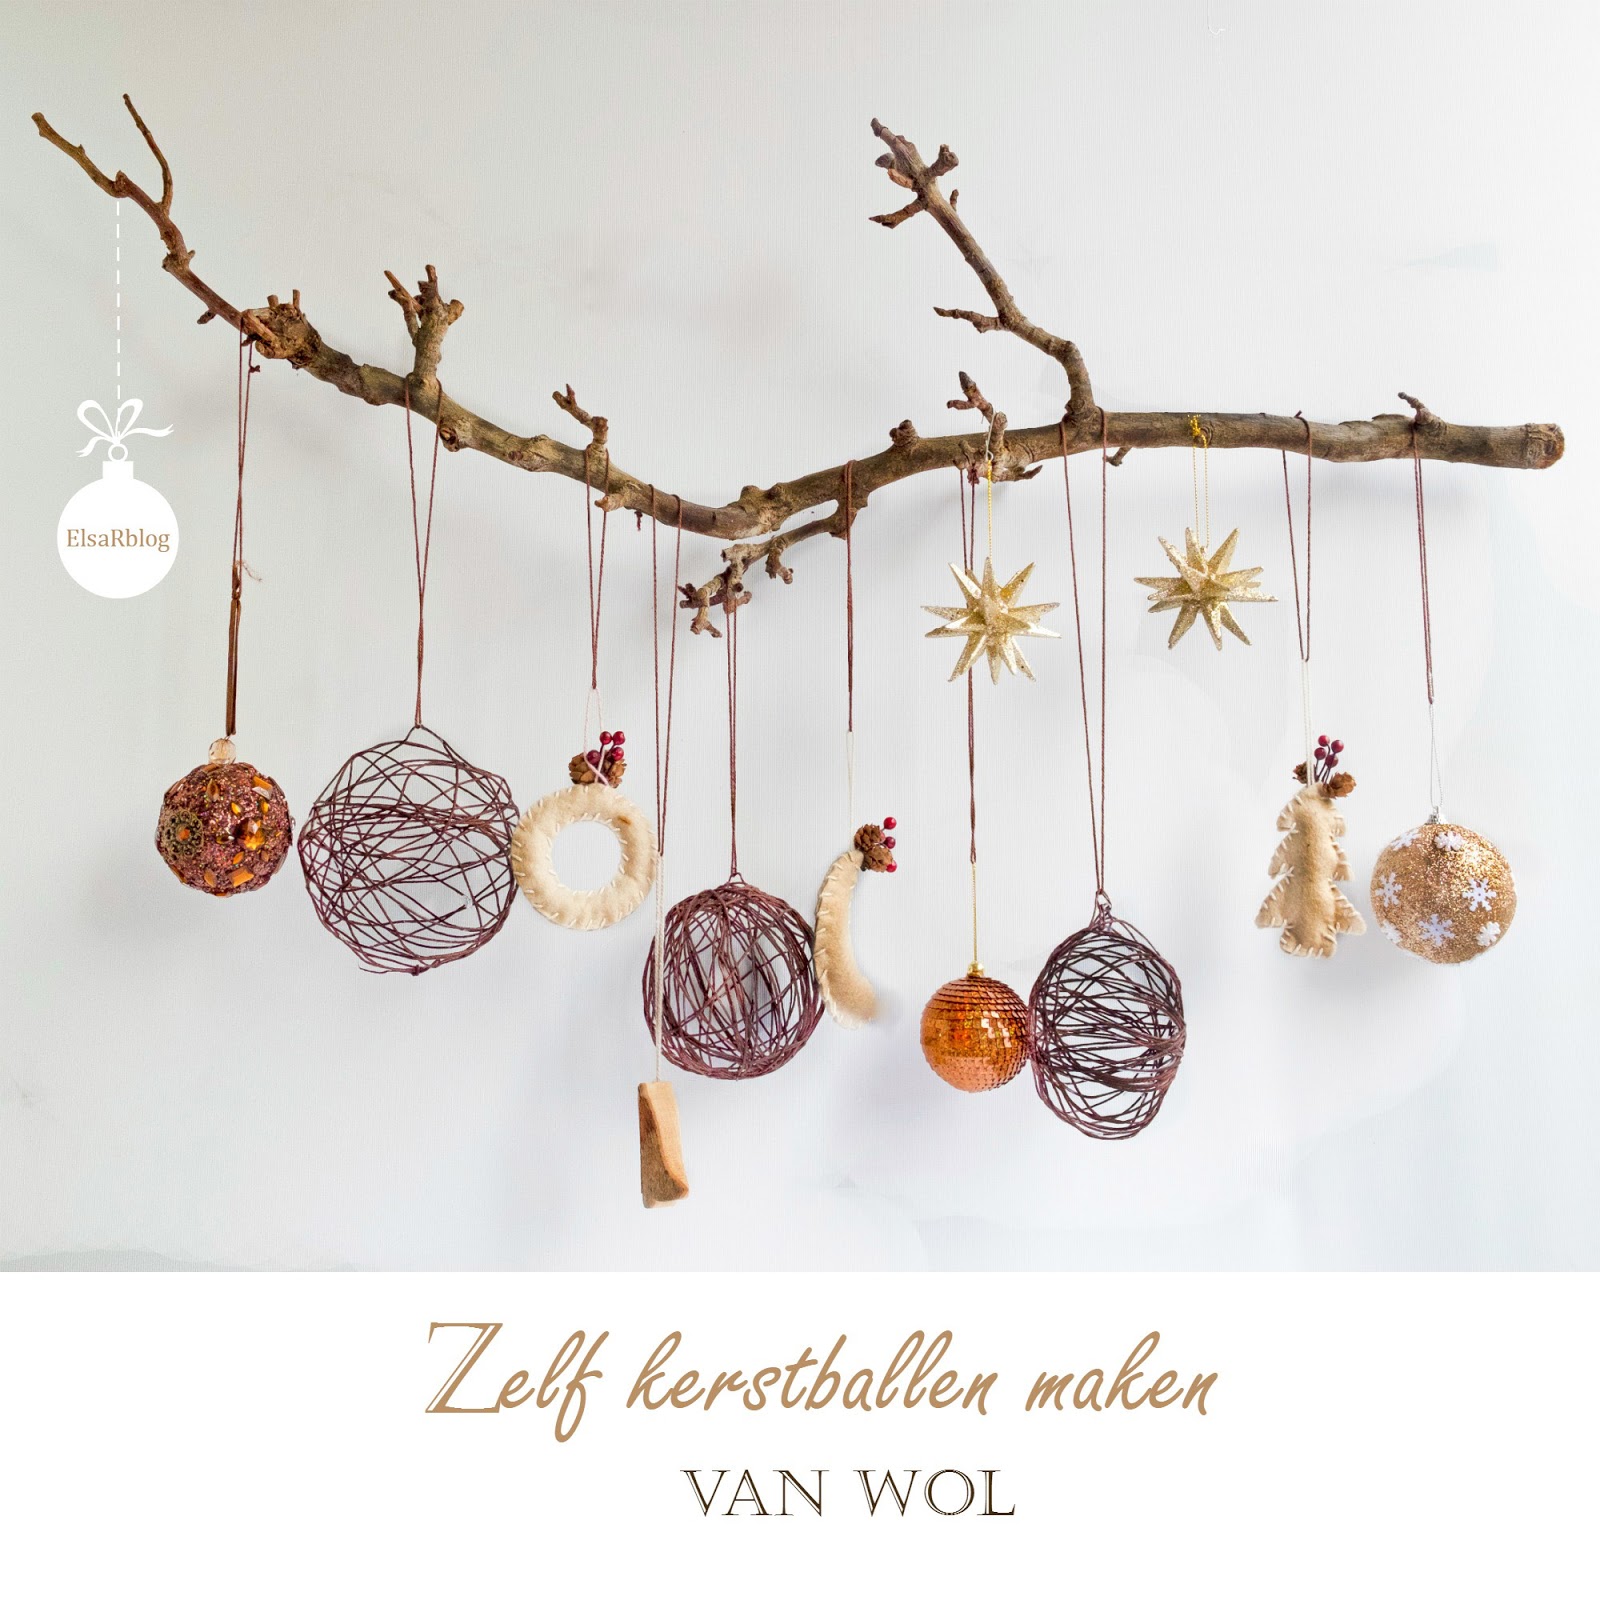 Insecten tellen Nog steeds stuiten op Zelf kerstballen maken van wol - Diy – ElsaRblog